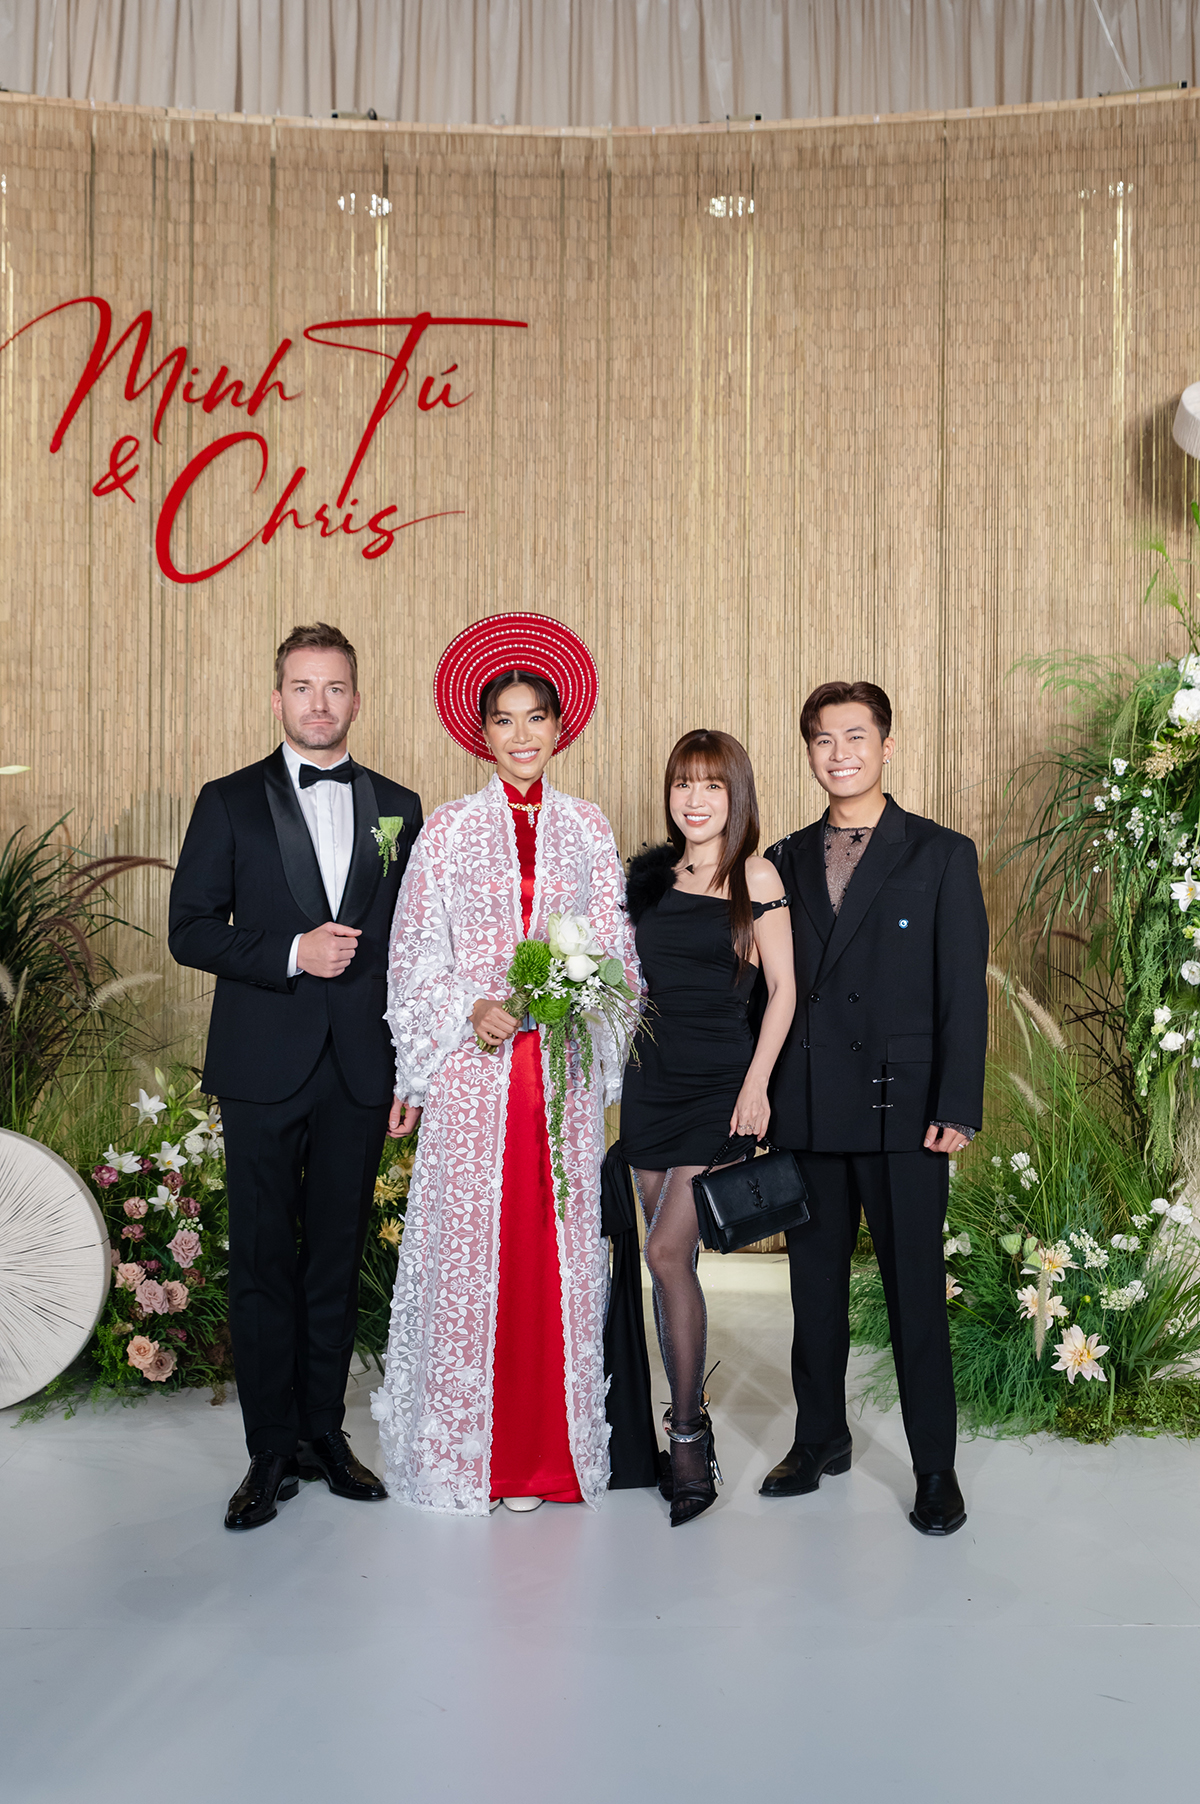 Dàn sao Việt diện đồ đen dự đám cưới Minh Tú, cô dâu mặc Áo dài đỏ lấy cảm hứng từ ba mẹ - ảnh 15